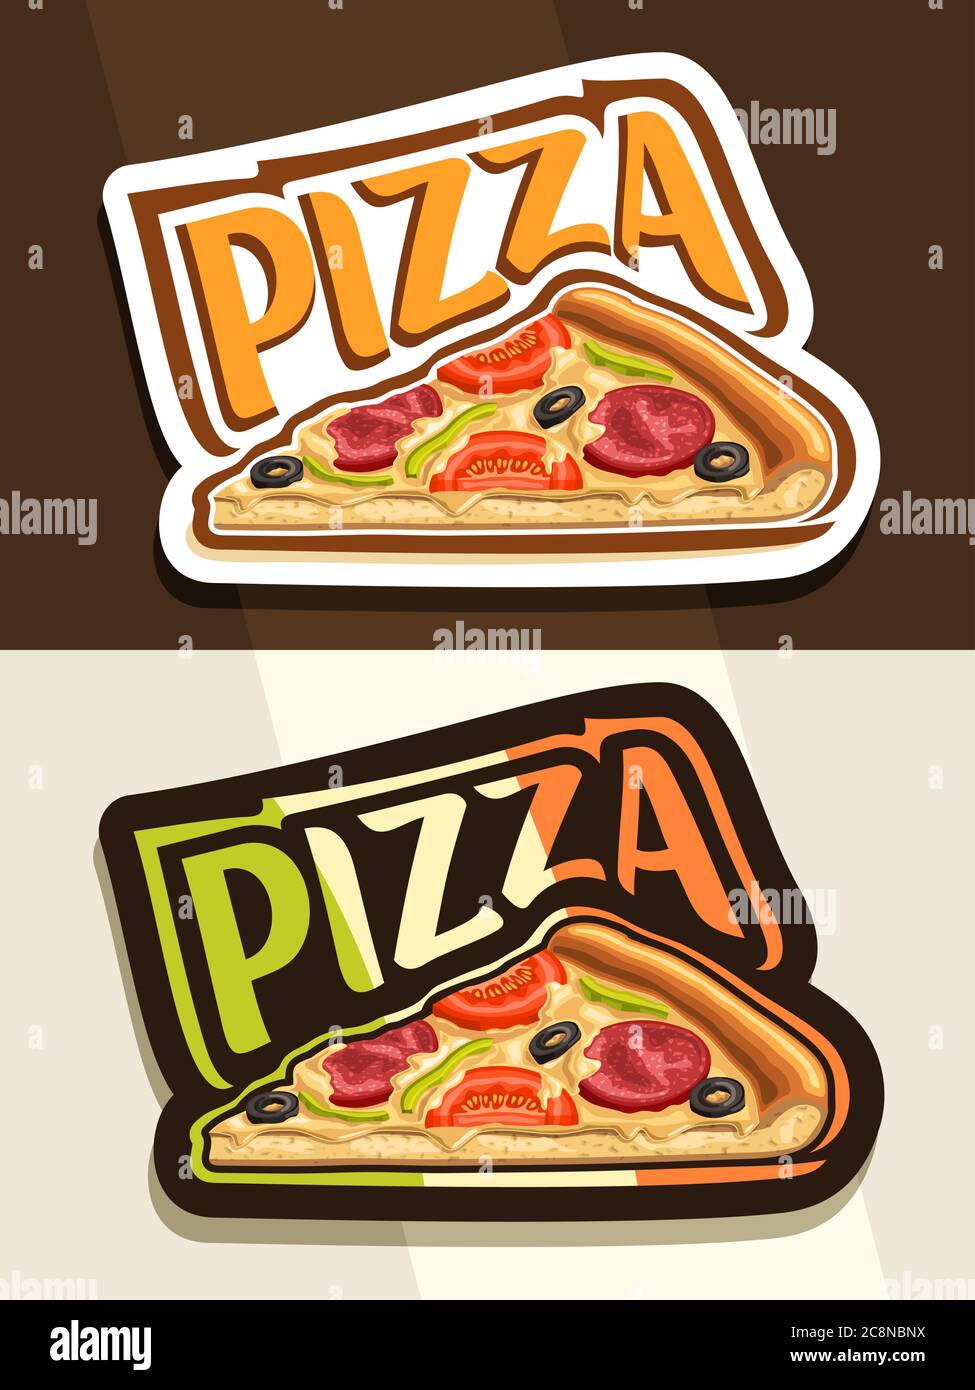 Logo vettoriale per Pizza, 2 badge bianchi e neri con fetta isolata di pizza gourmet fatta in casa con pepperoni e verdure, carattere unico per parola piz Illustrazione Vettoriale